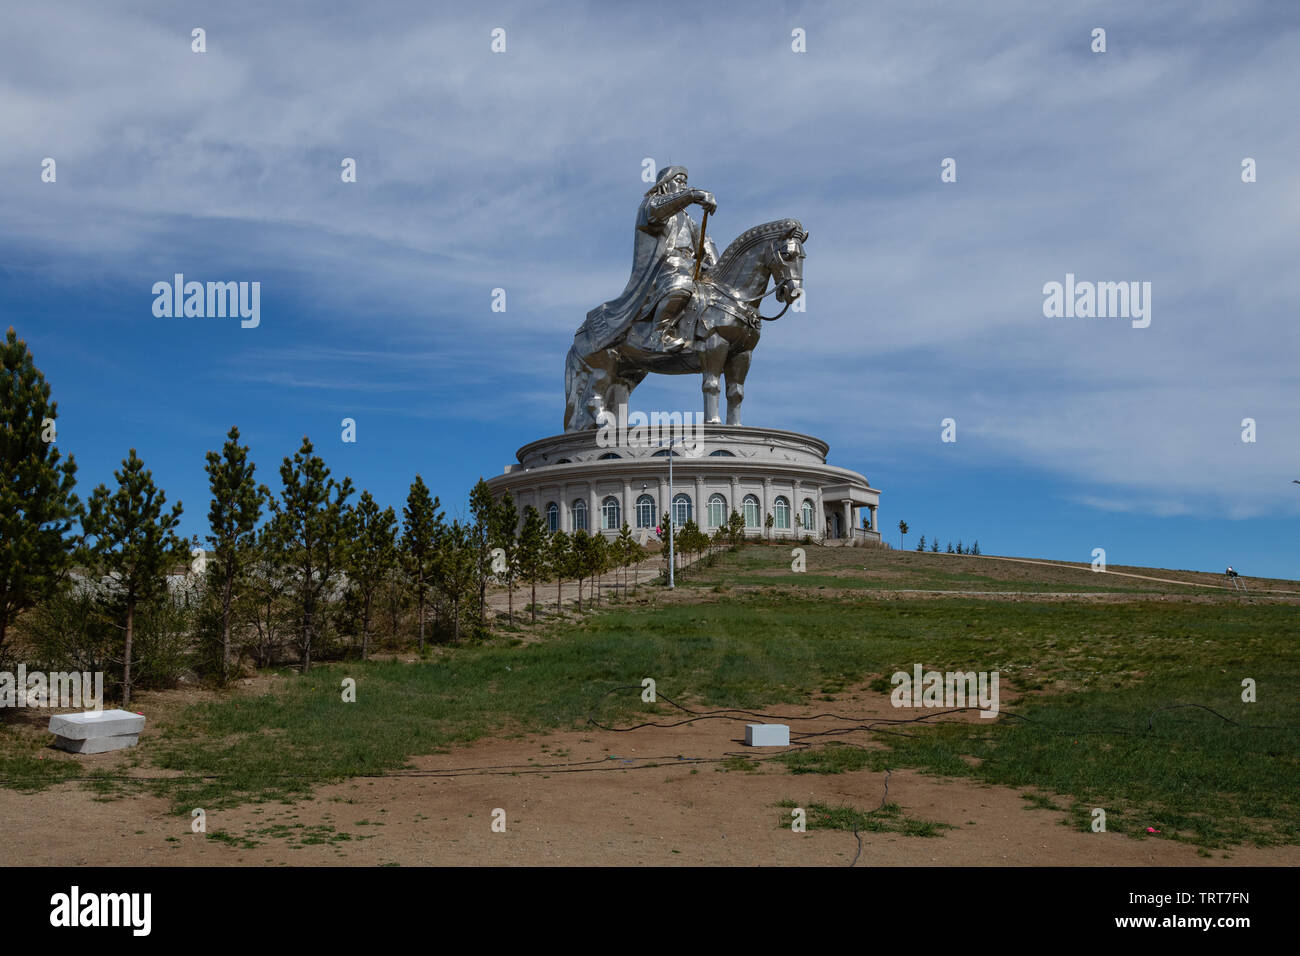 La plus grande statue équestre dans le monde près d'Oulan-Bator en Mongolie. Connu localement comme le grand Chinggis statue de Gengis Khan Banque D'Images